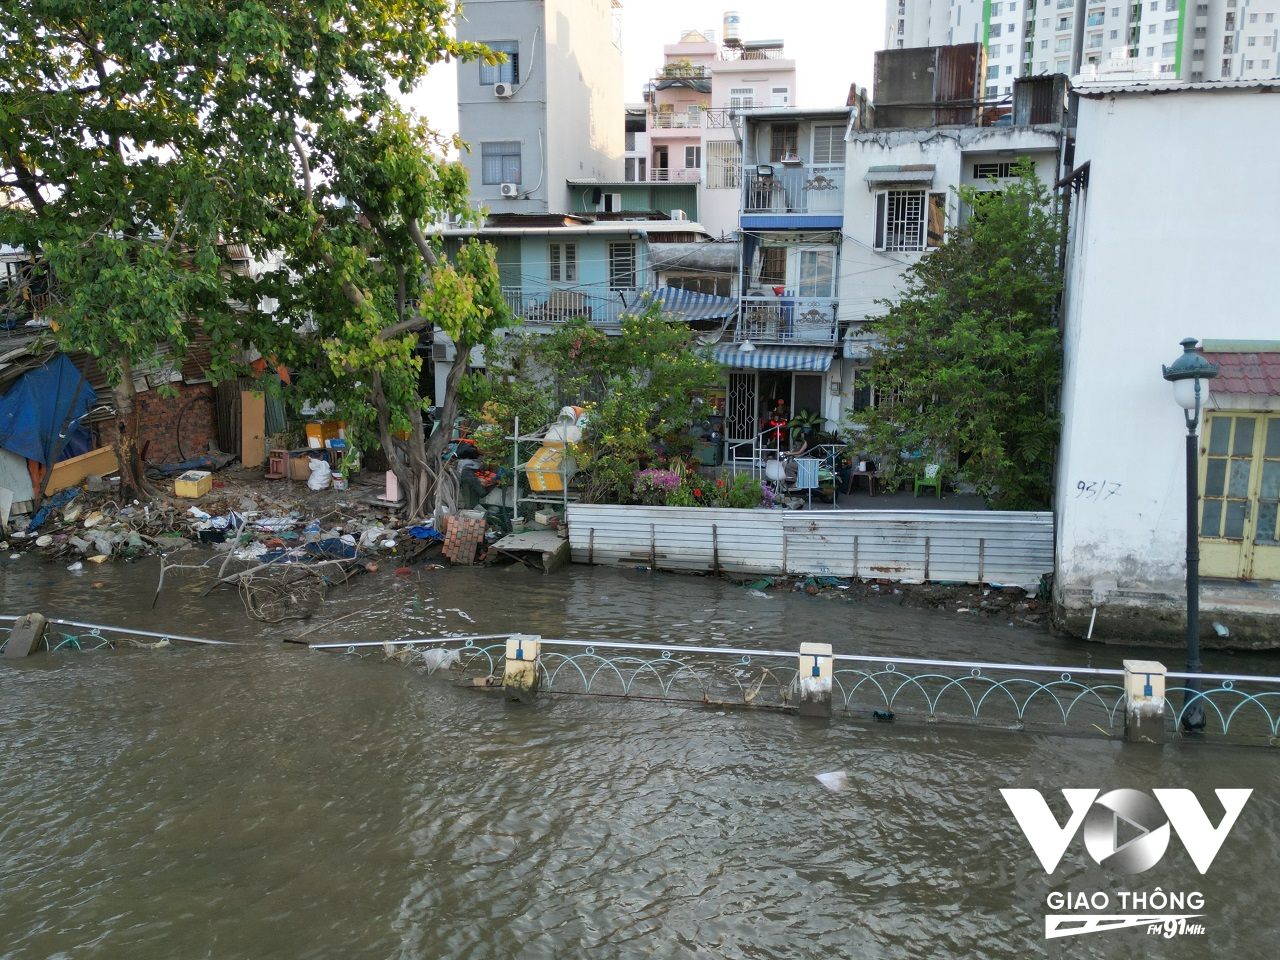 Hiện nhiều đoạn hàng rào dọc bờ kênh bị đổ sập xuống sông Sài Gòn, một số nhà dân bị lún, nghiêng, nứt toác, có dấu hiệu sạt lở lan rộng